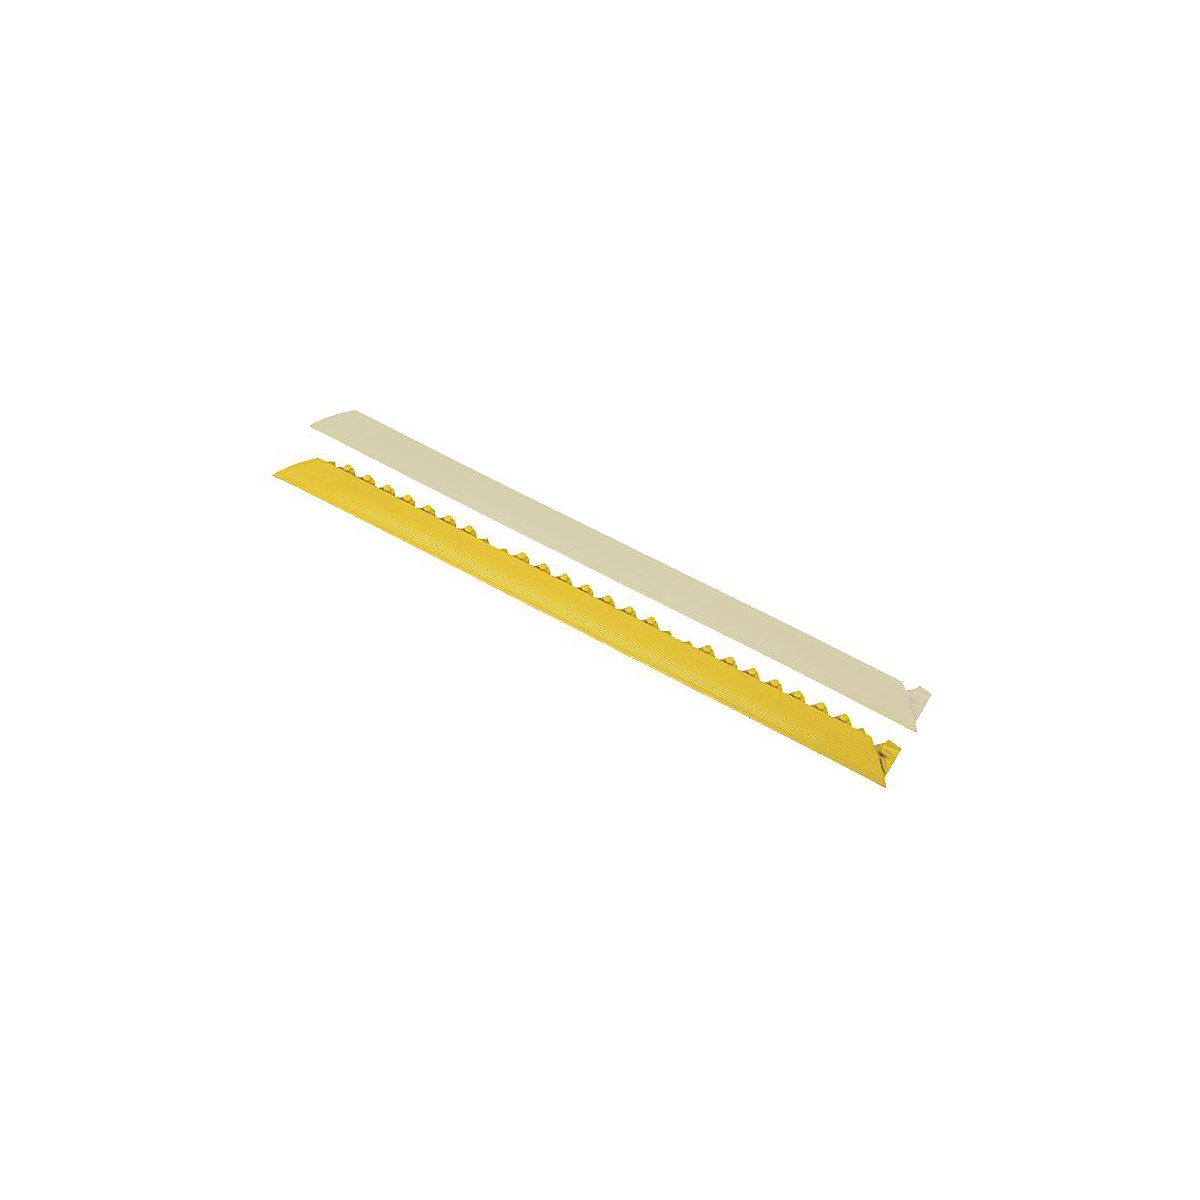 NOTRAX Randleiste, abgeschrägt, Ausführung männlich, gelb